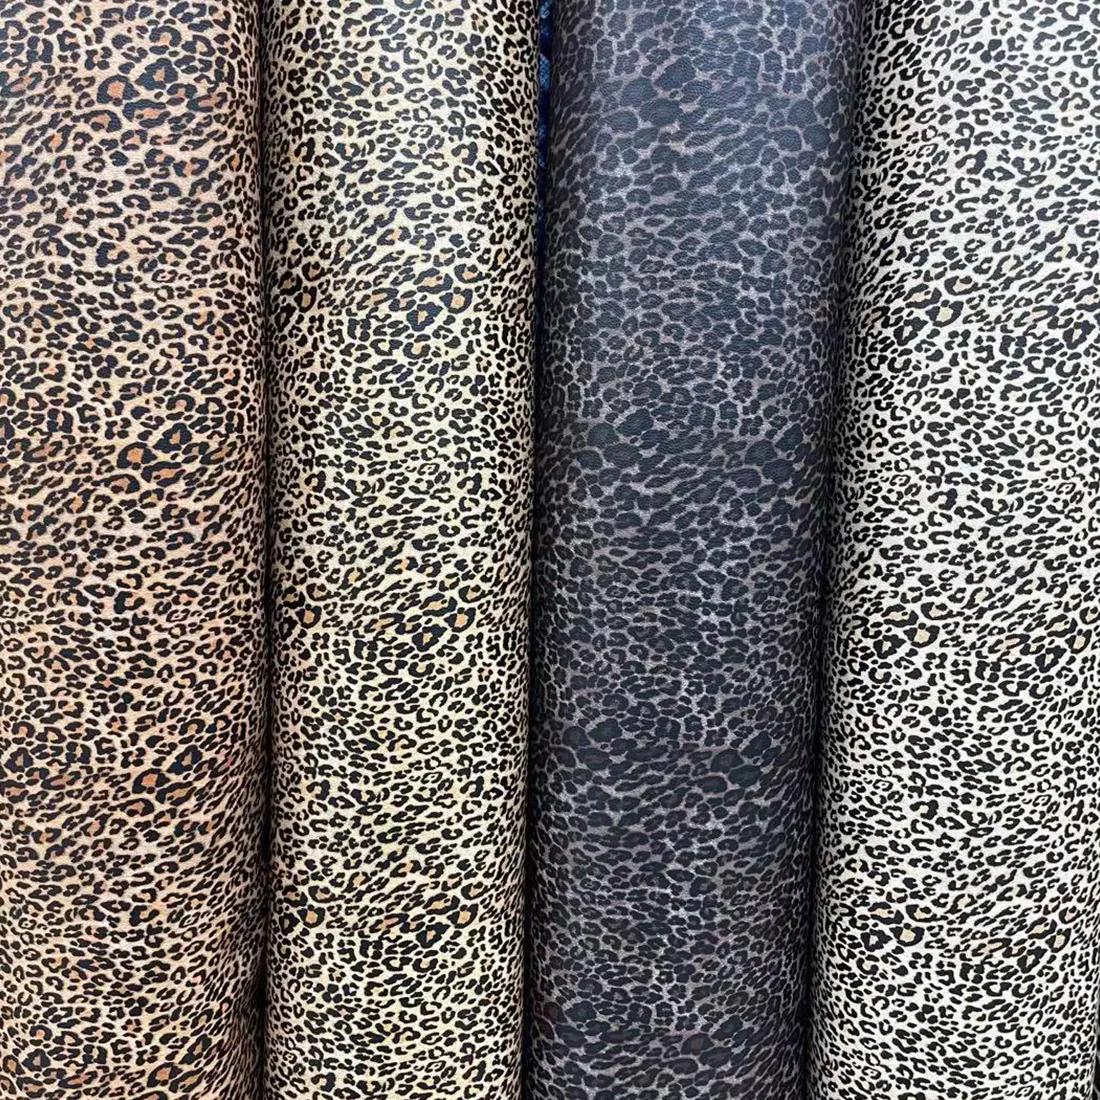 Nuovi prodotti materiali speciali stampa animale leopardata basic style pelle PVC per scarpe borse